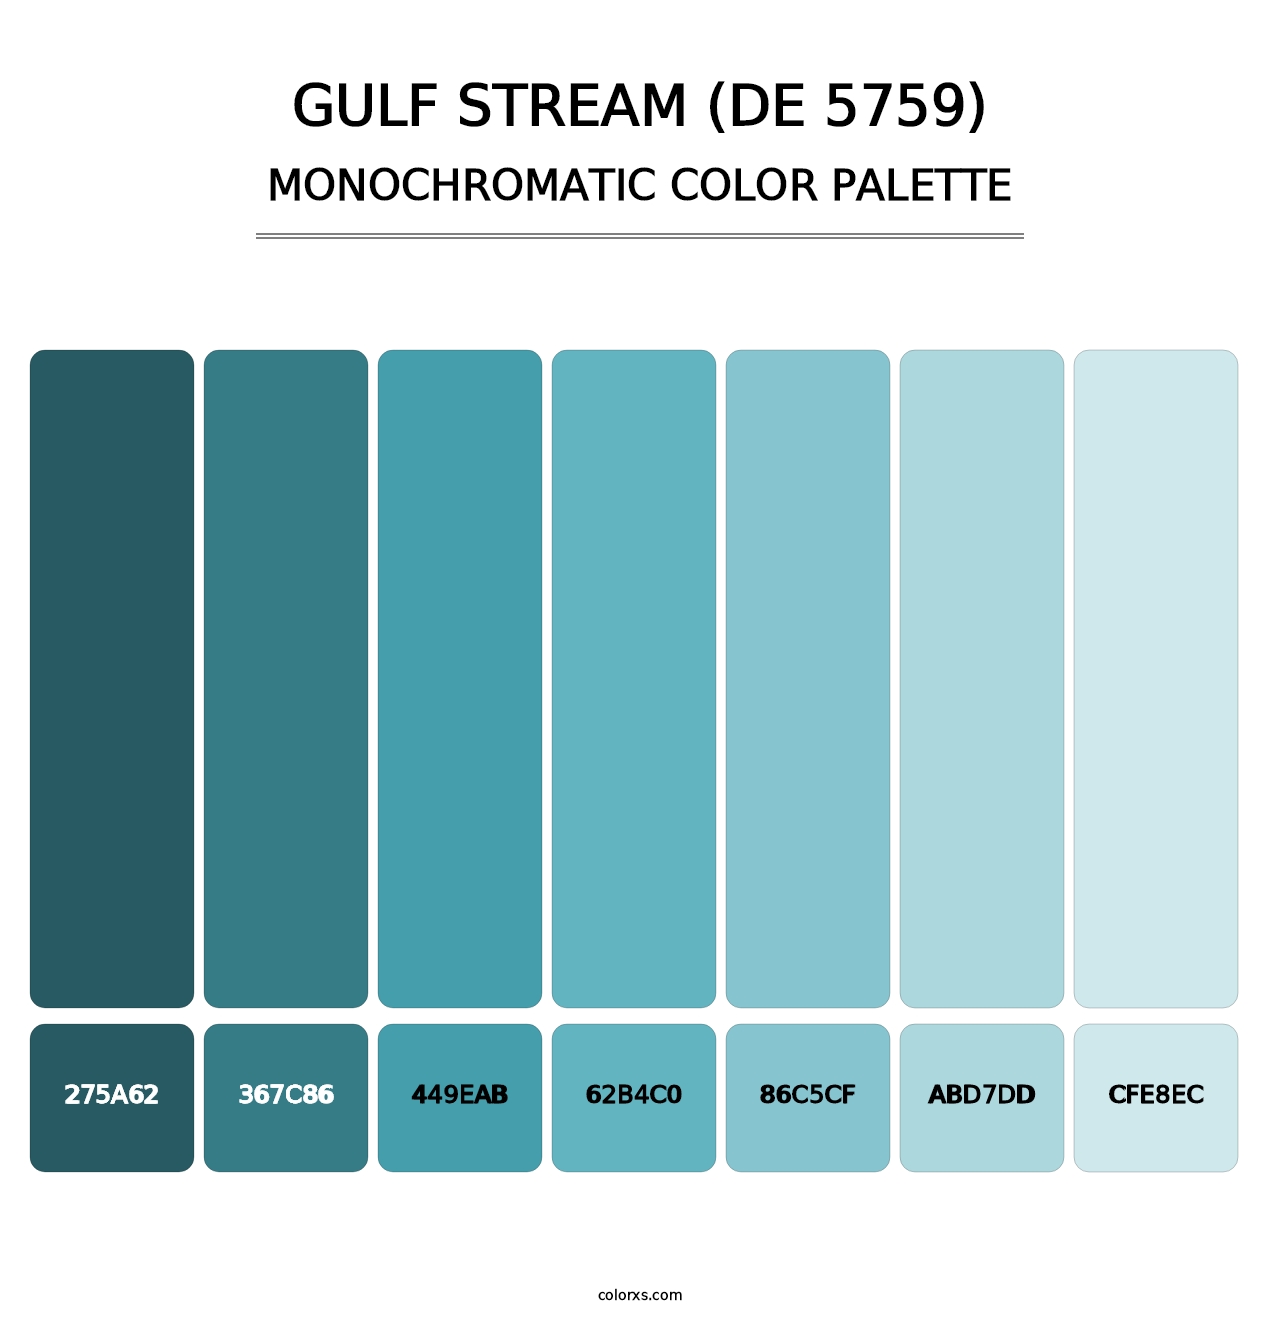 Gulf Stream (DE 5759) - Monochromatic Color Palette